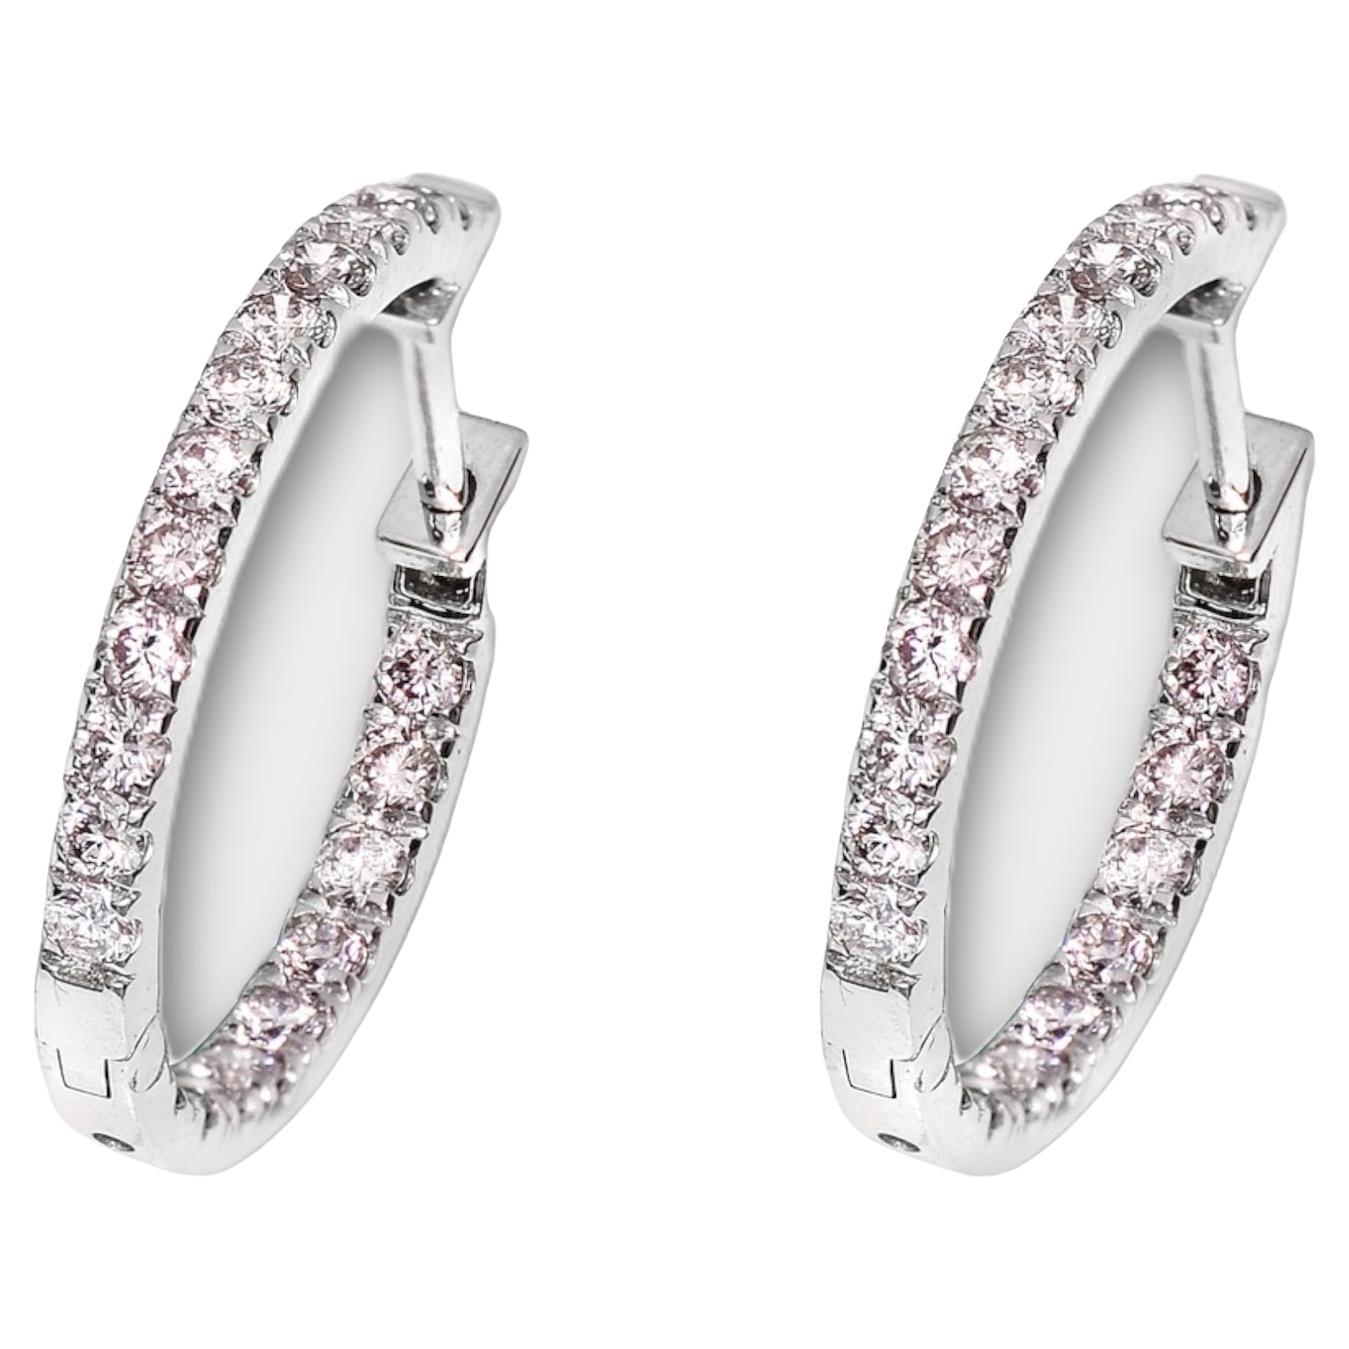 IGI 14K 0.98 ct Natural Pink Diamonds Hoop Earrings For Sale